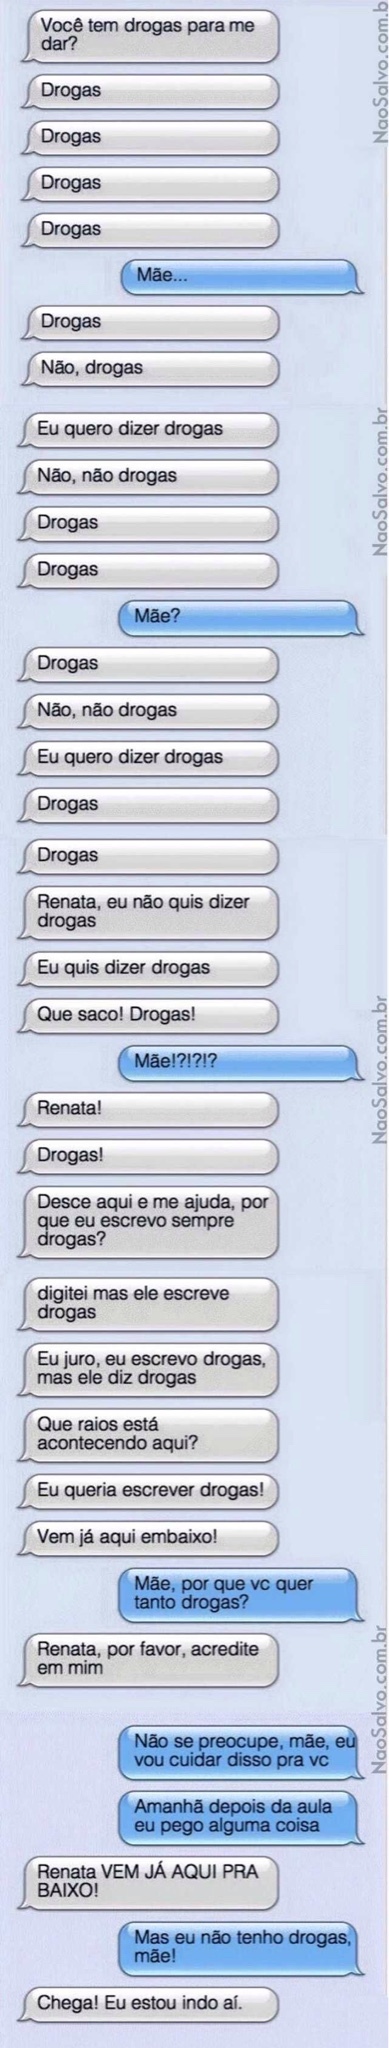 drugs - meme